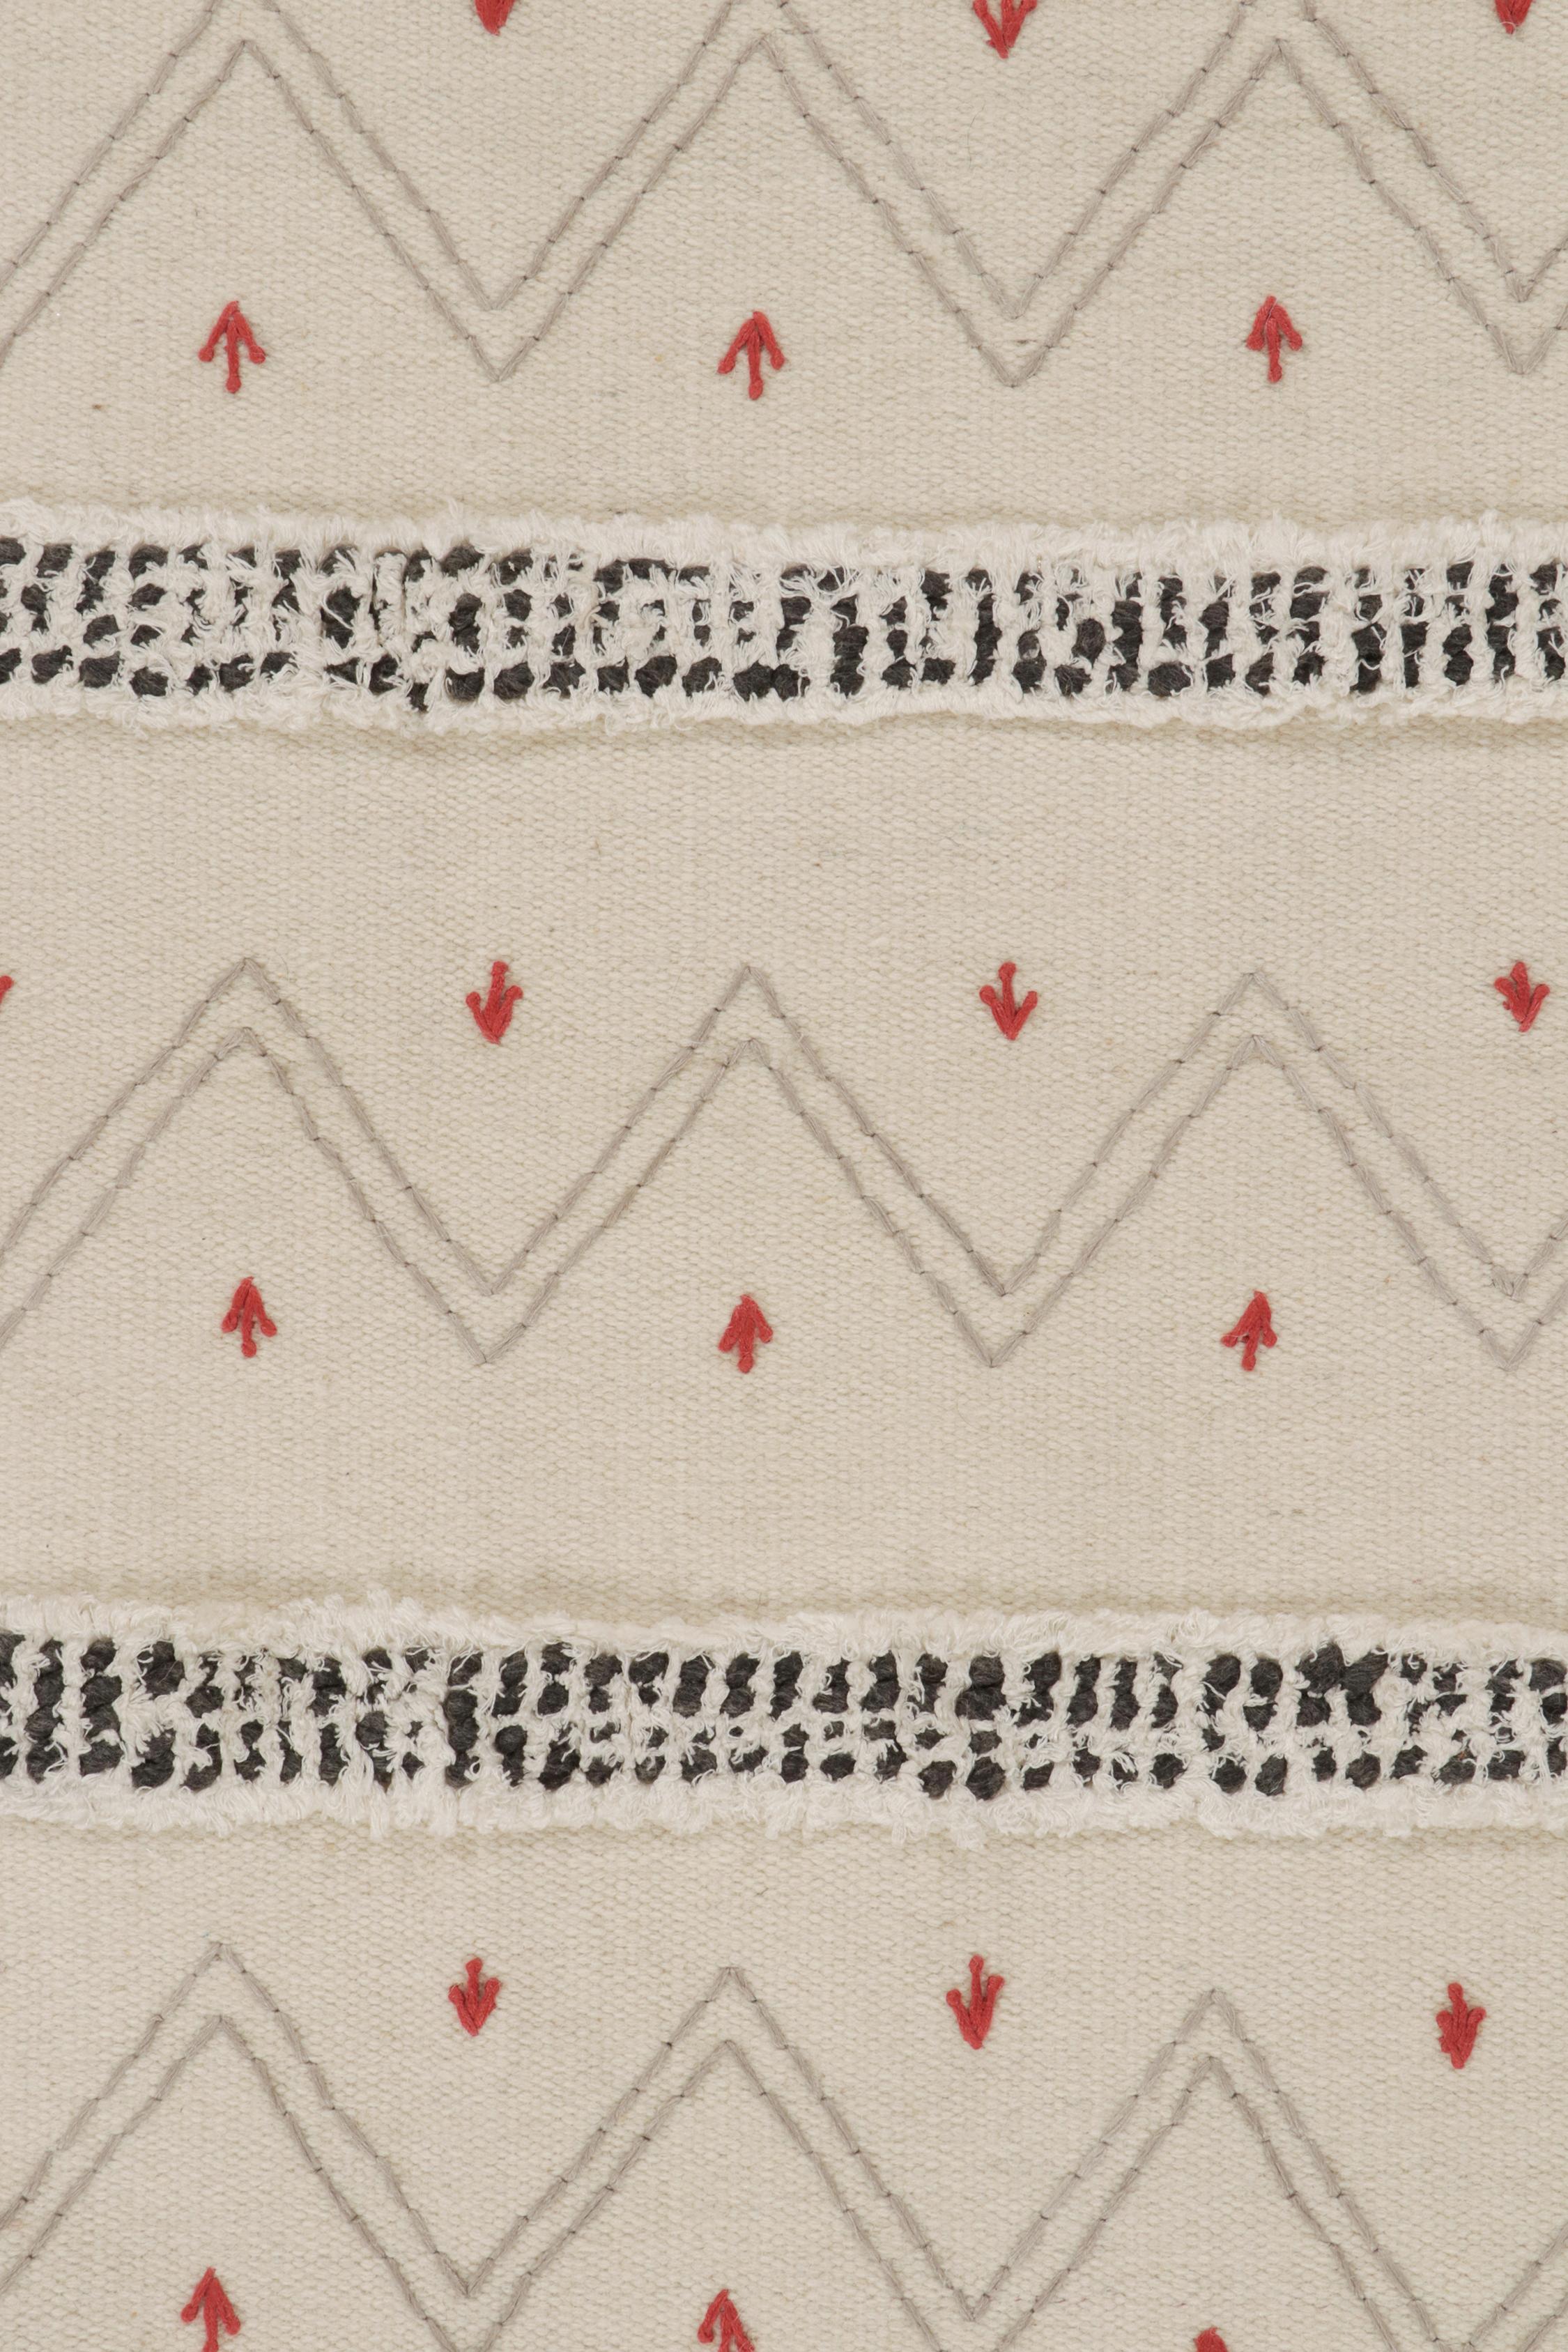 Laine Tapis & Kilim's Tribal-Style Kilim in Off white, Gray and Red Geometric Patterns (motifs géométriques blanc cassé, gris et rouge) en vente